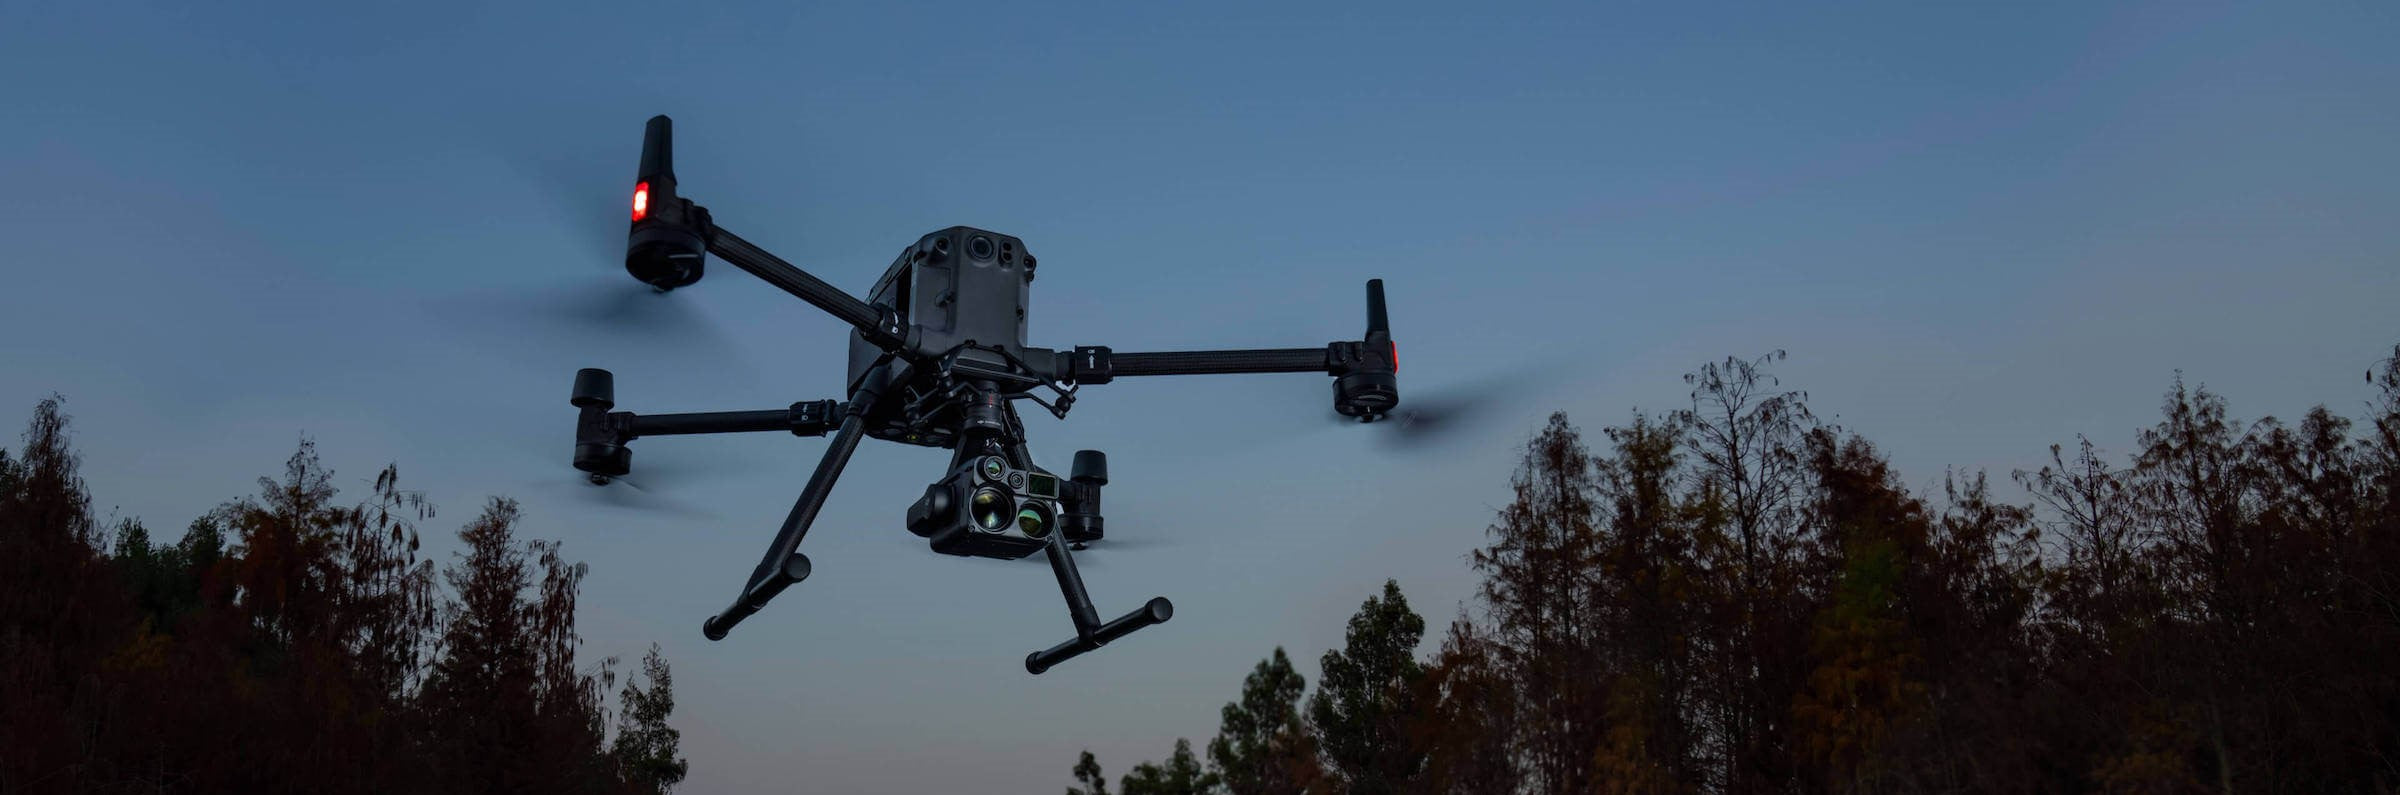 DJI Matrice 300 RTK - Drohnen-Plattform, Industrie und BOS